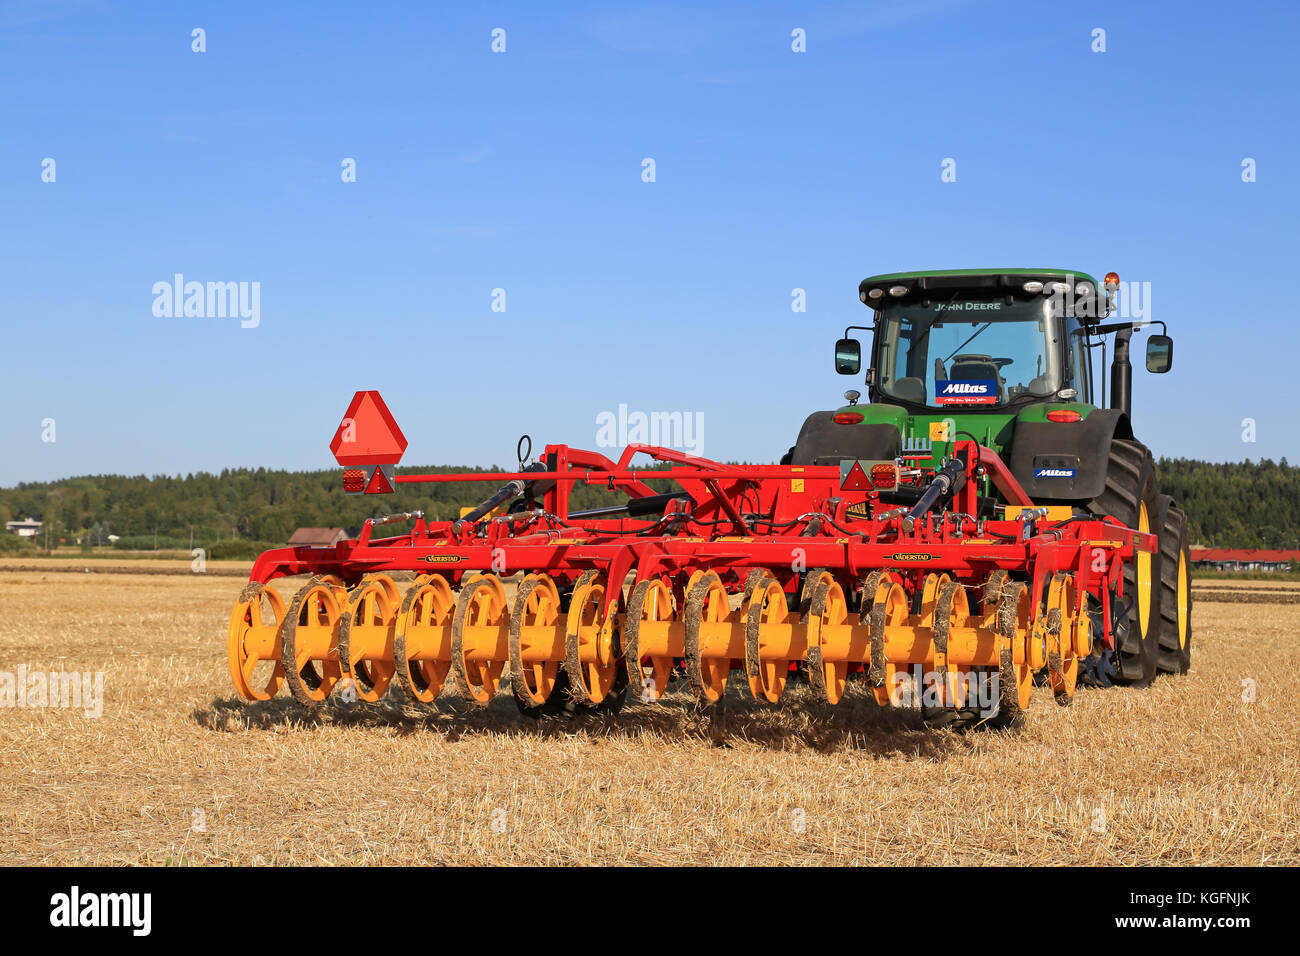 Salo, Finnland - 21 August 2015: Neue vaderstad Opus 400 Grubber und John Deere Traktor auf dem Feld an der Einrichtung von puontin peltopaivat Landwirtschaftliche h Stockfoto